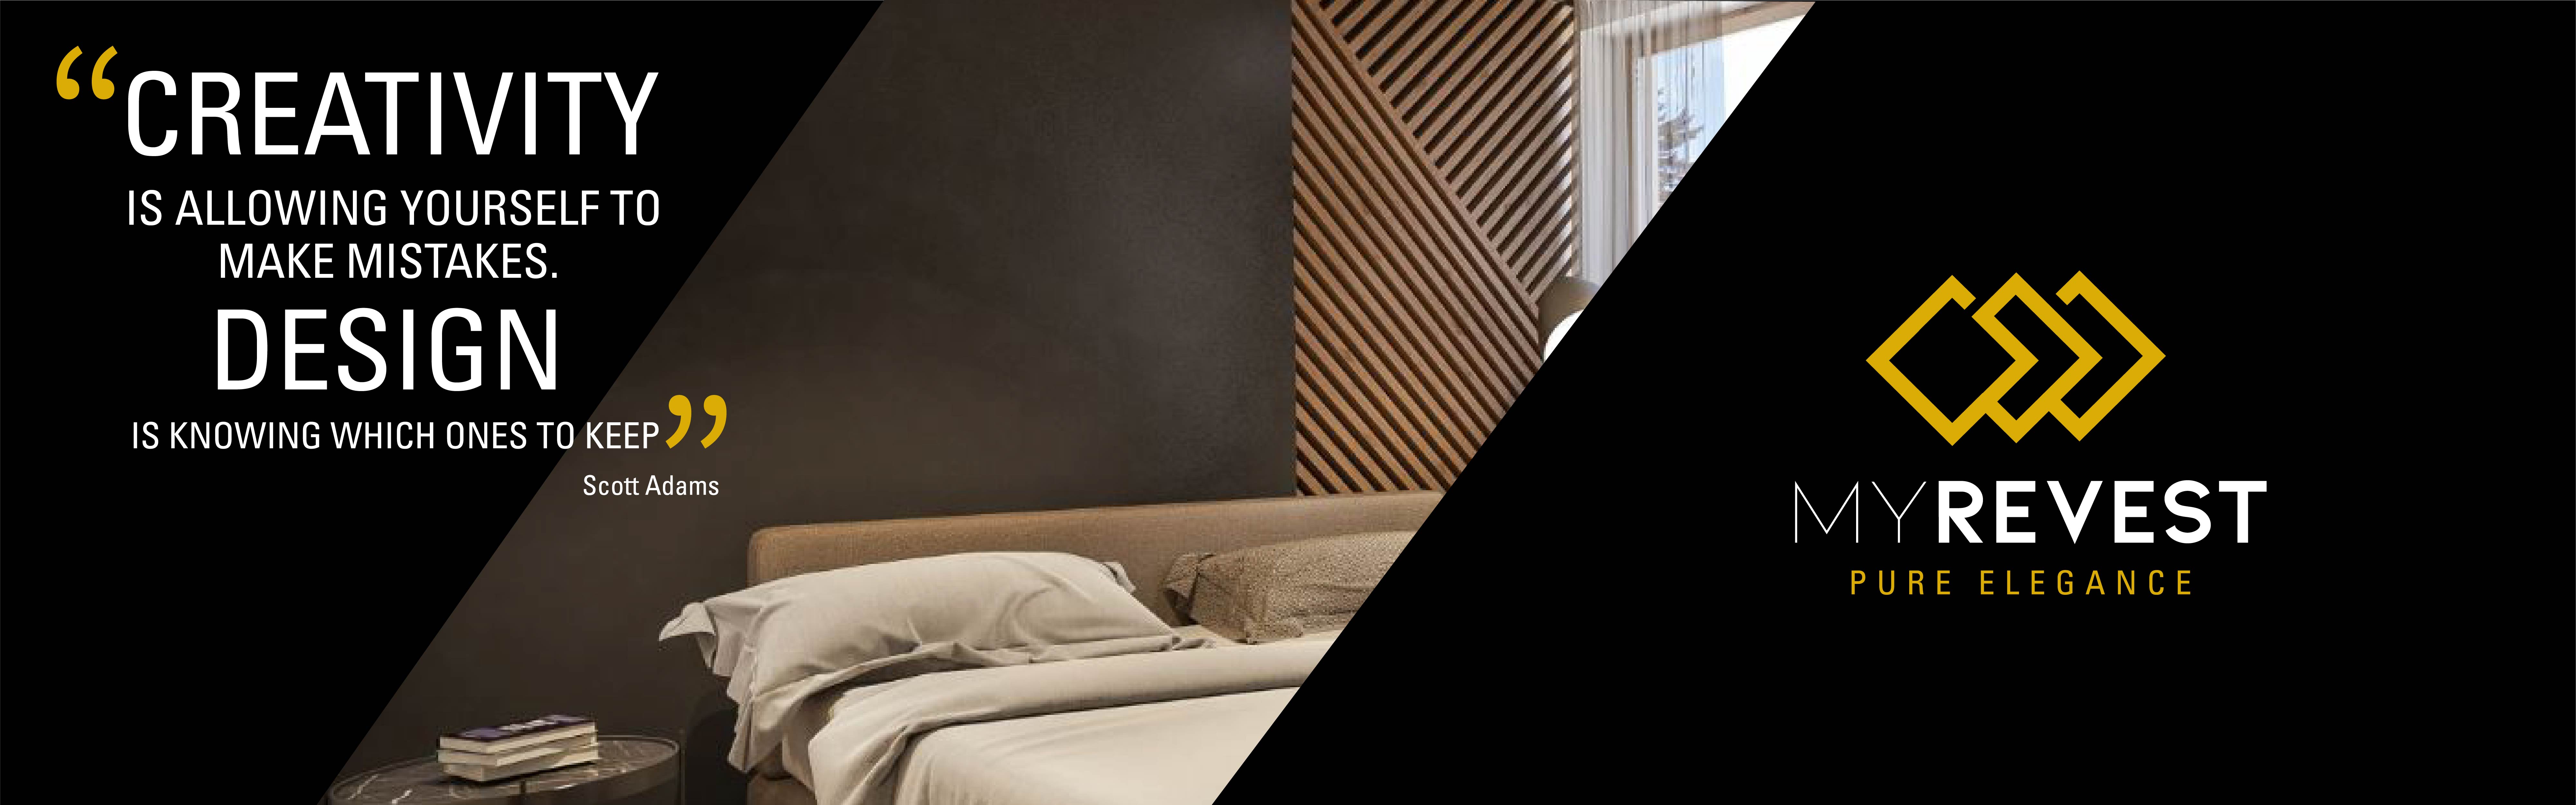 Mikrozementverkleidung an der Wand eines minimalistischen Schlafzimmers neben dem Logo von MyRevest